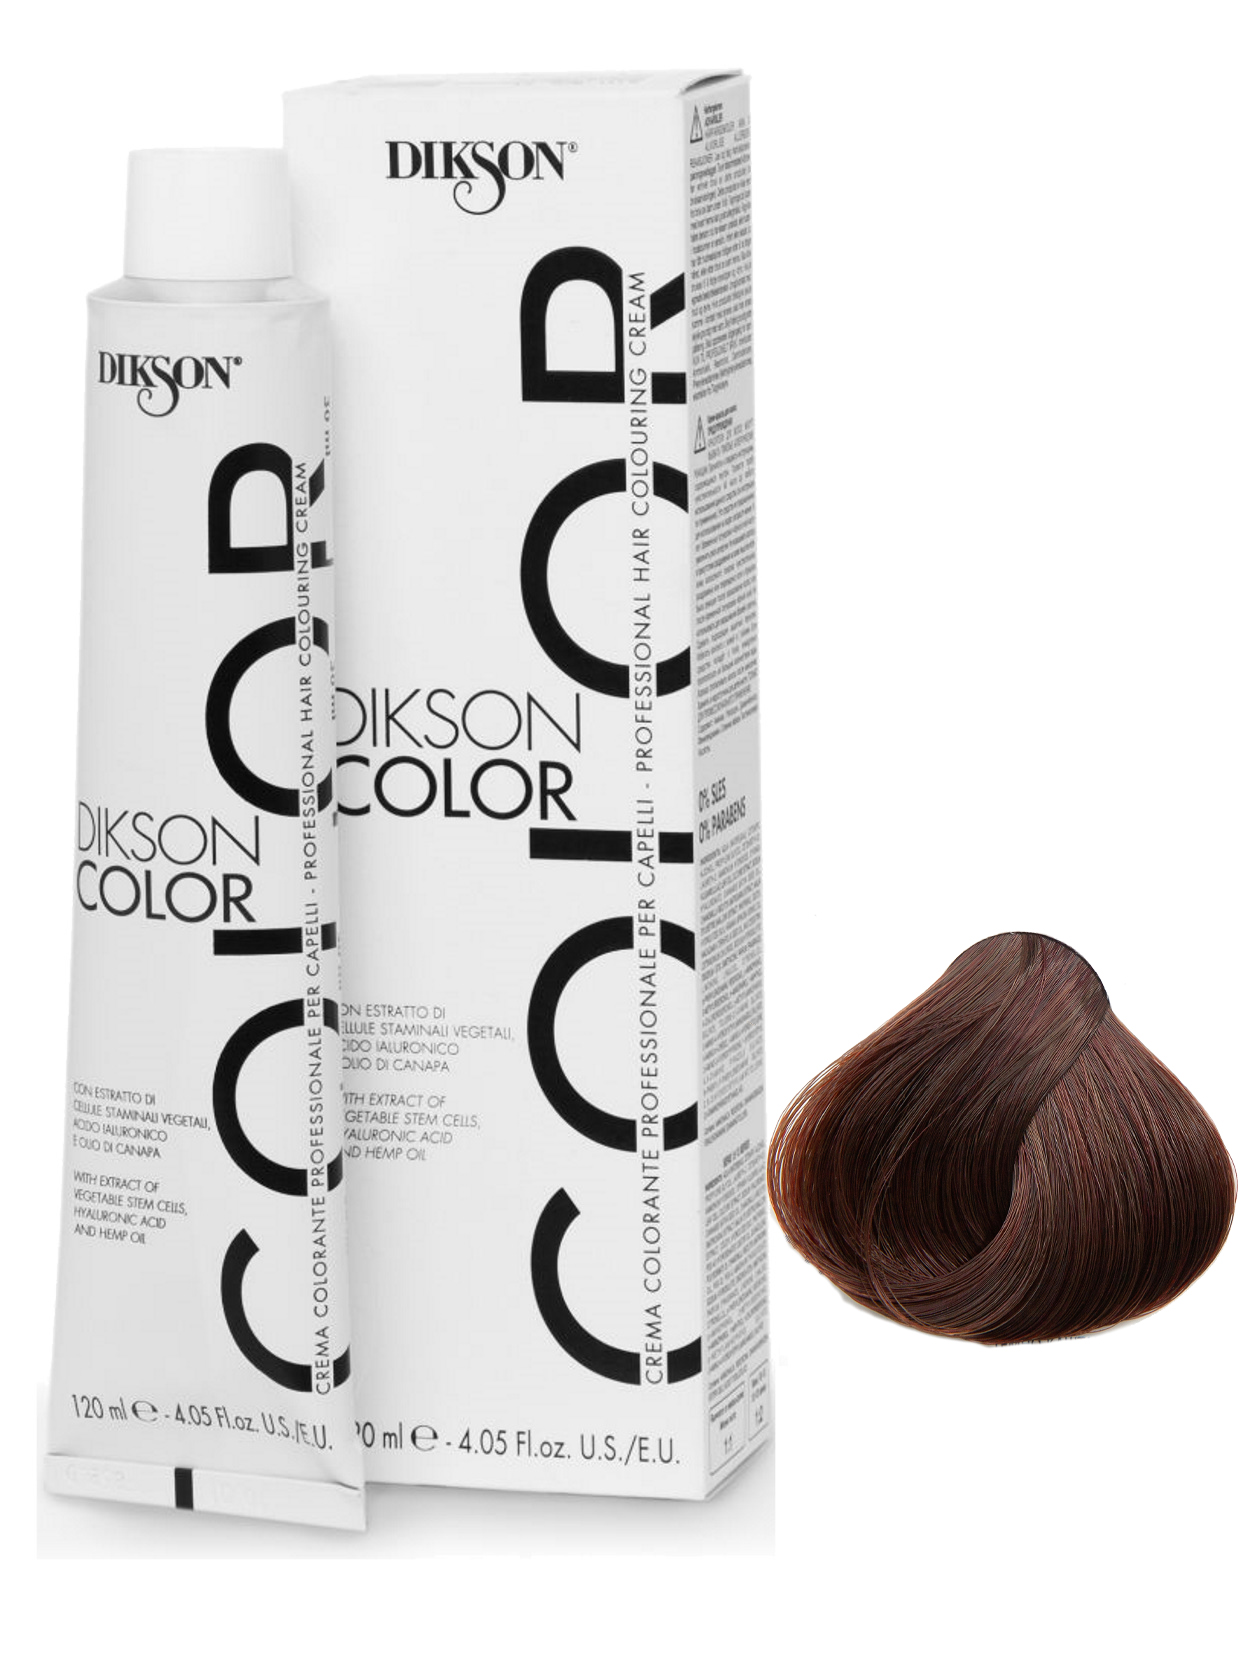 Крем-краска Dikson, COLOR для окрашивания 3.4 темно-каштановый с медным оттенком 120 мл краска для граффити arton 400 мл в аэрозоле cannabis